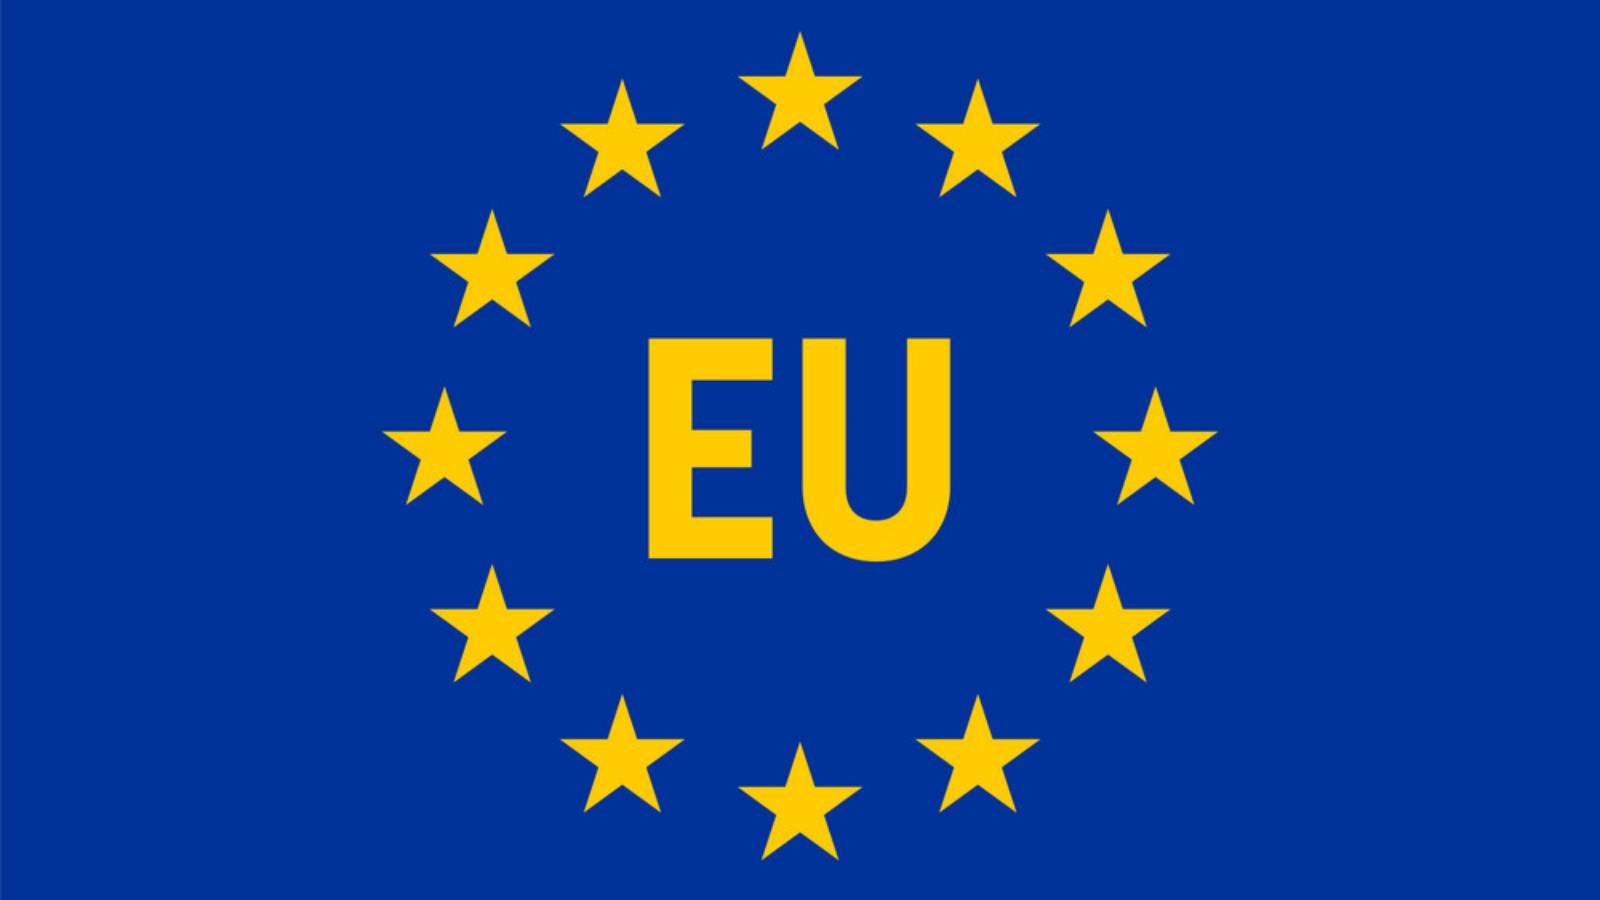 Comisia Europeana a Platit 2.6 Miliarde de Euro Romaniei in cadrul PNRR